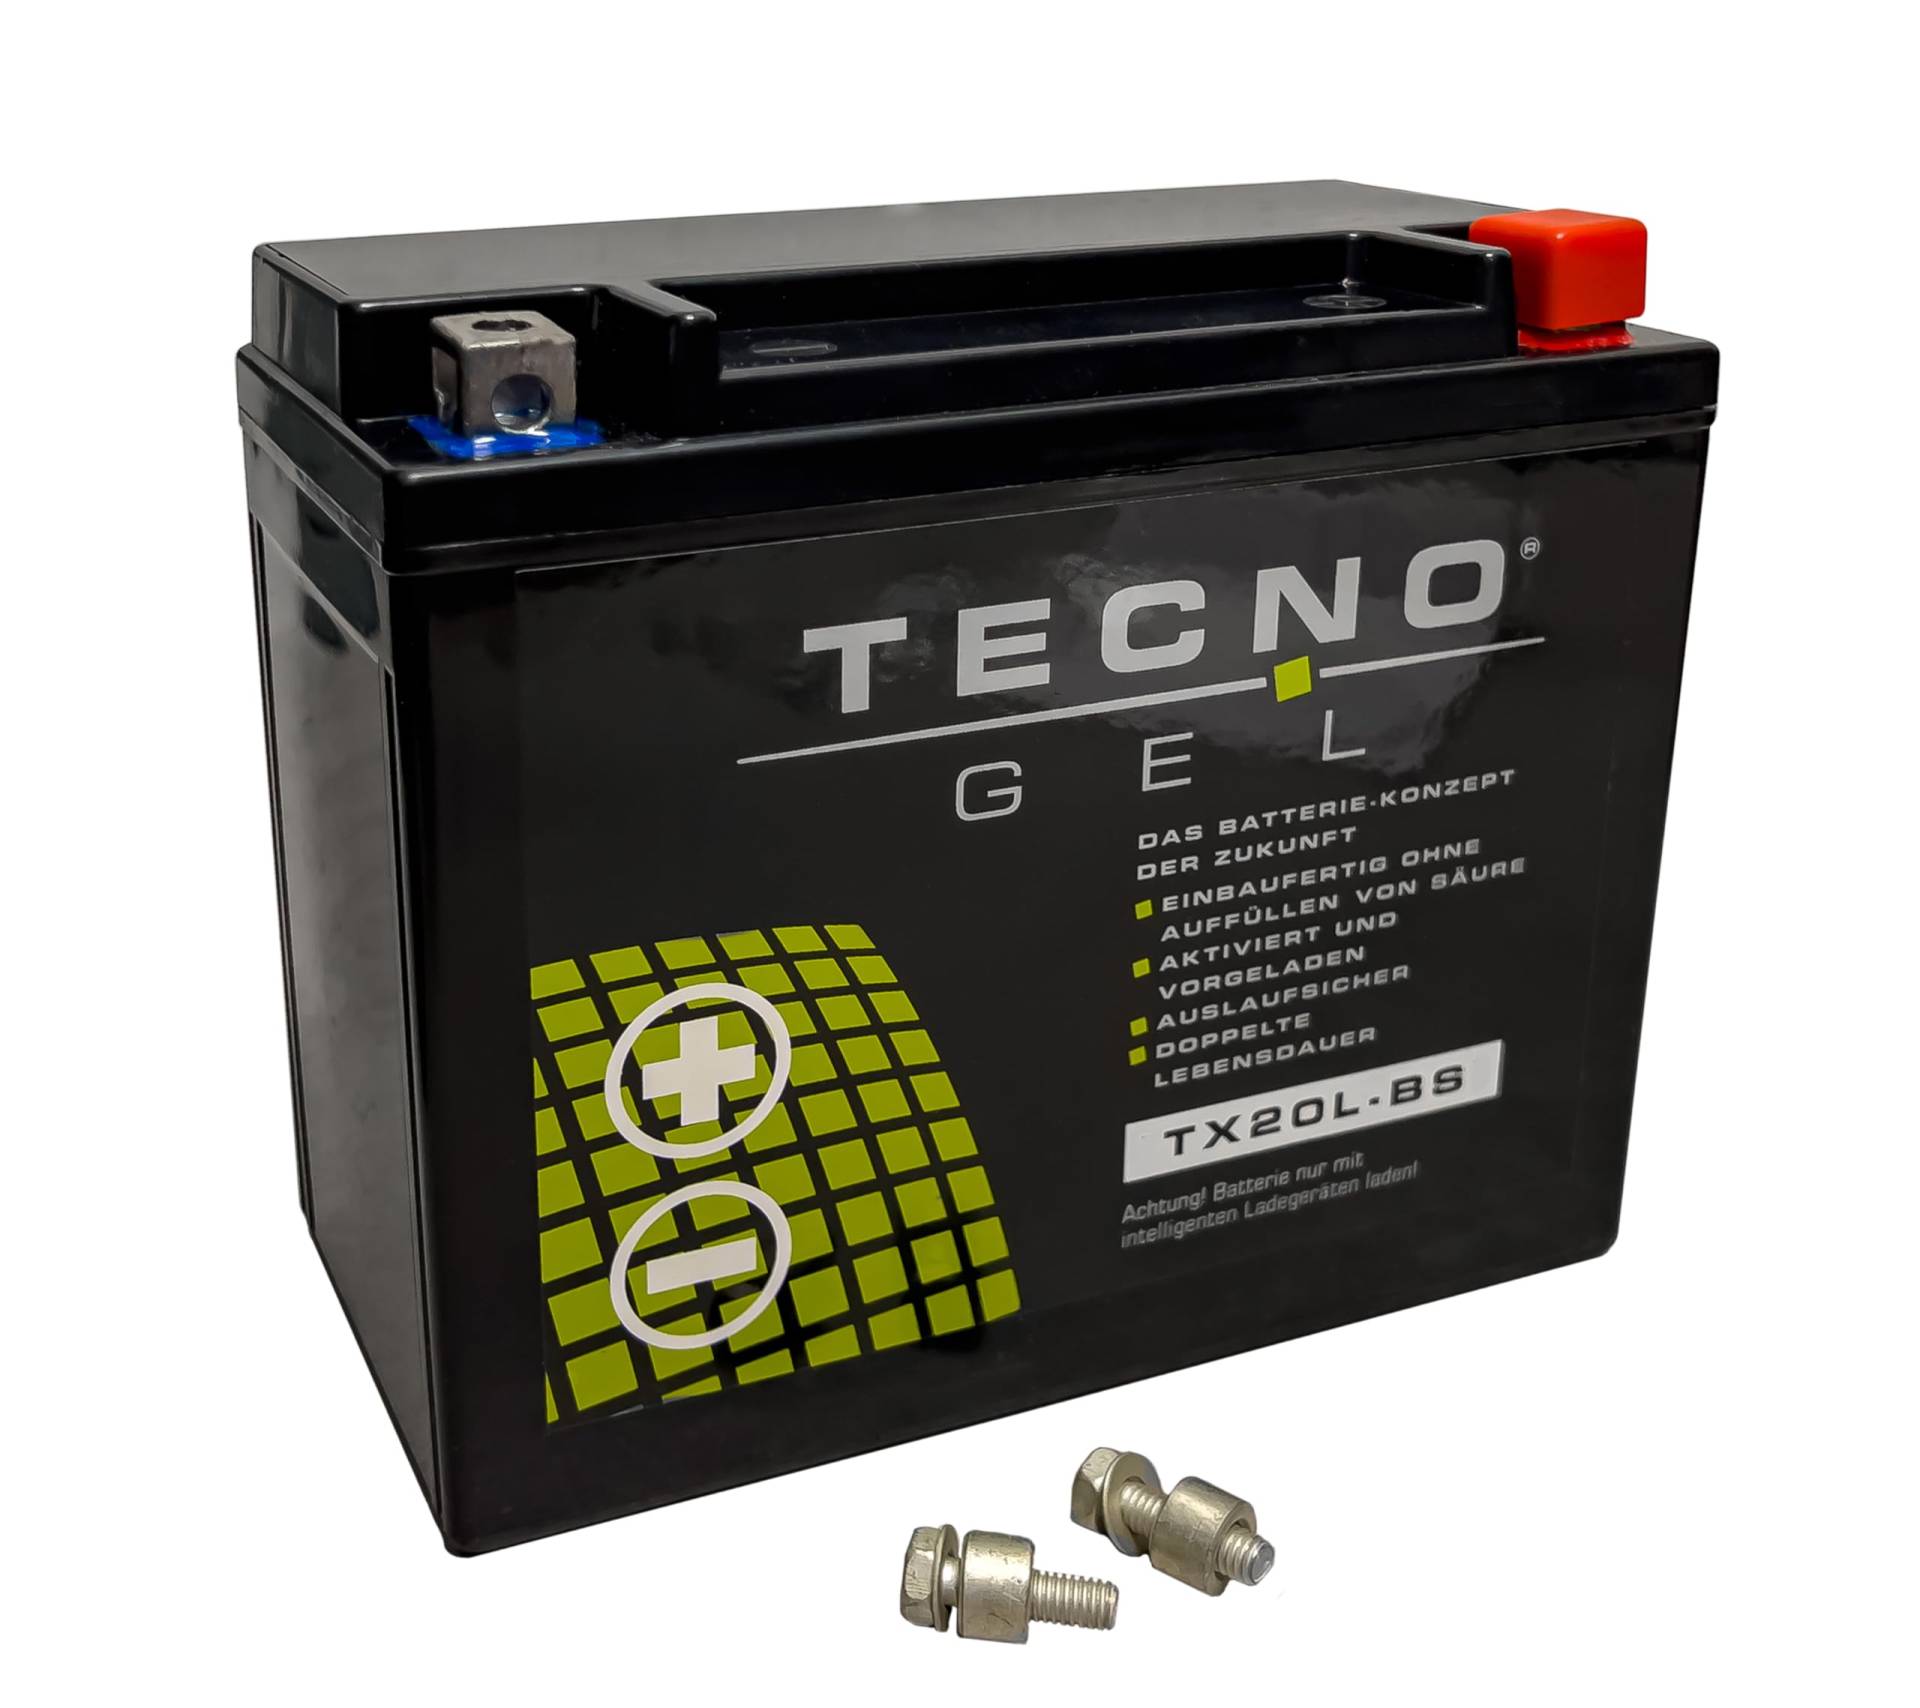 TECNO-GEL Motorrad-Batterie für YTX20L-BS für HARLEY DAVIDSON FXCW 1584 Softail Rocker 2008-2011, 12V Gel-Batterie 20Ah (DIN 82000), 175x87x155 mm von Wirth-Federn